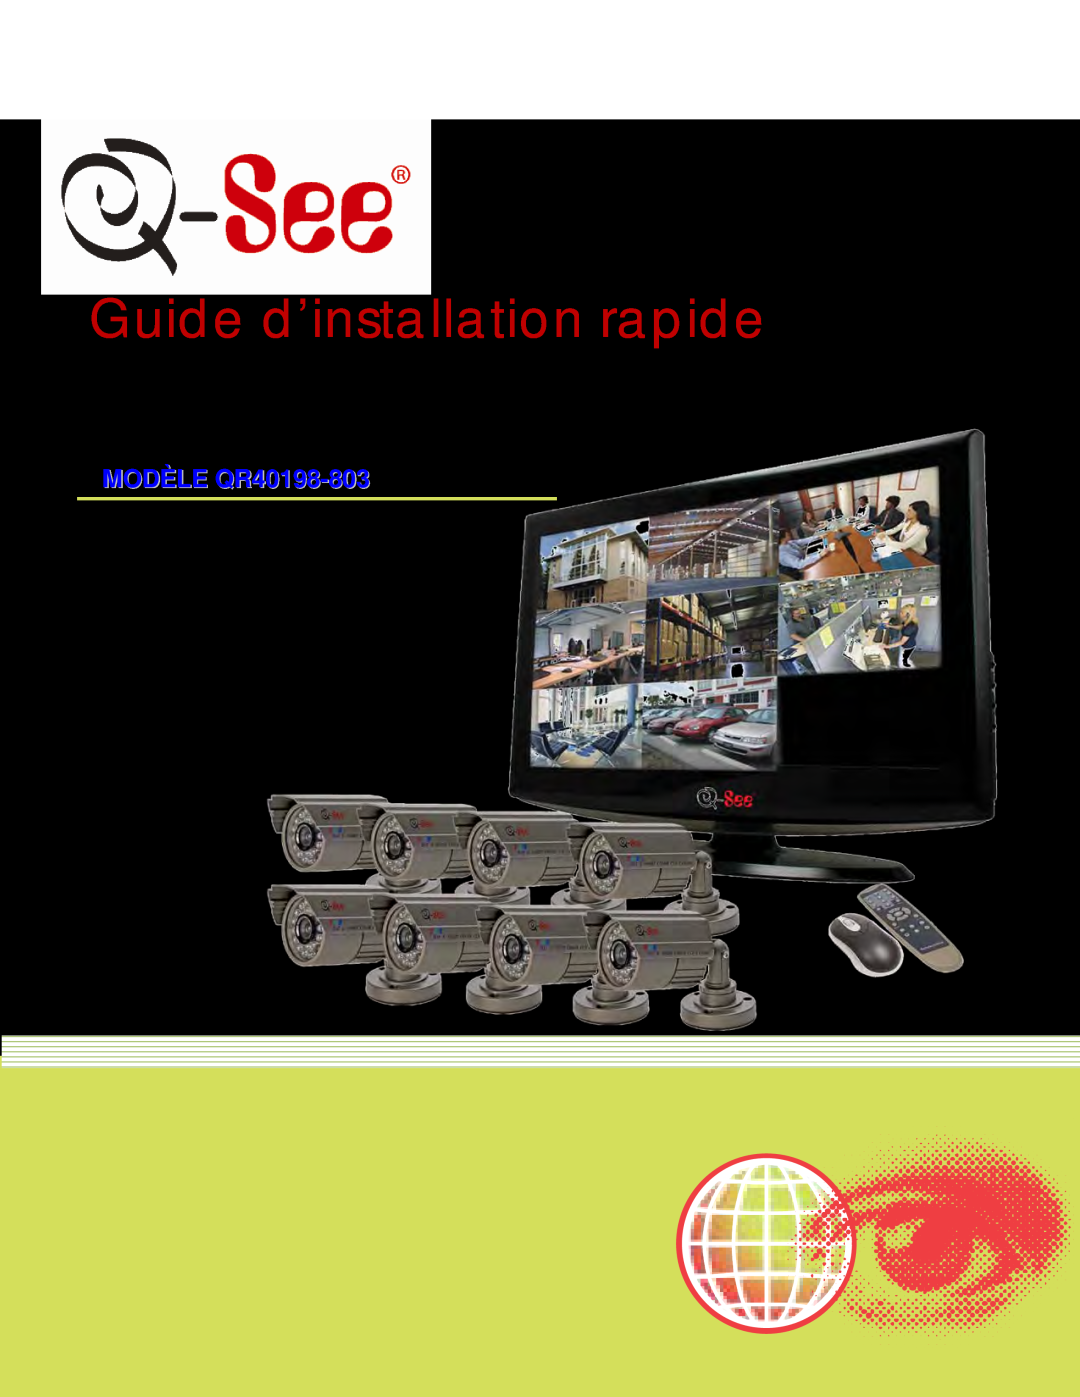 Q-See manual Guide d’installation rapide, MODÈLE QR40198-803 